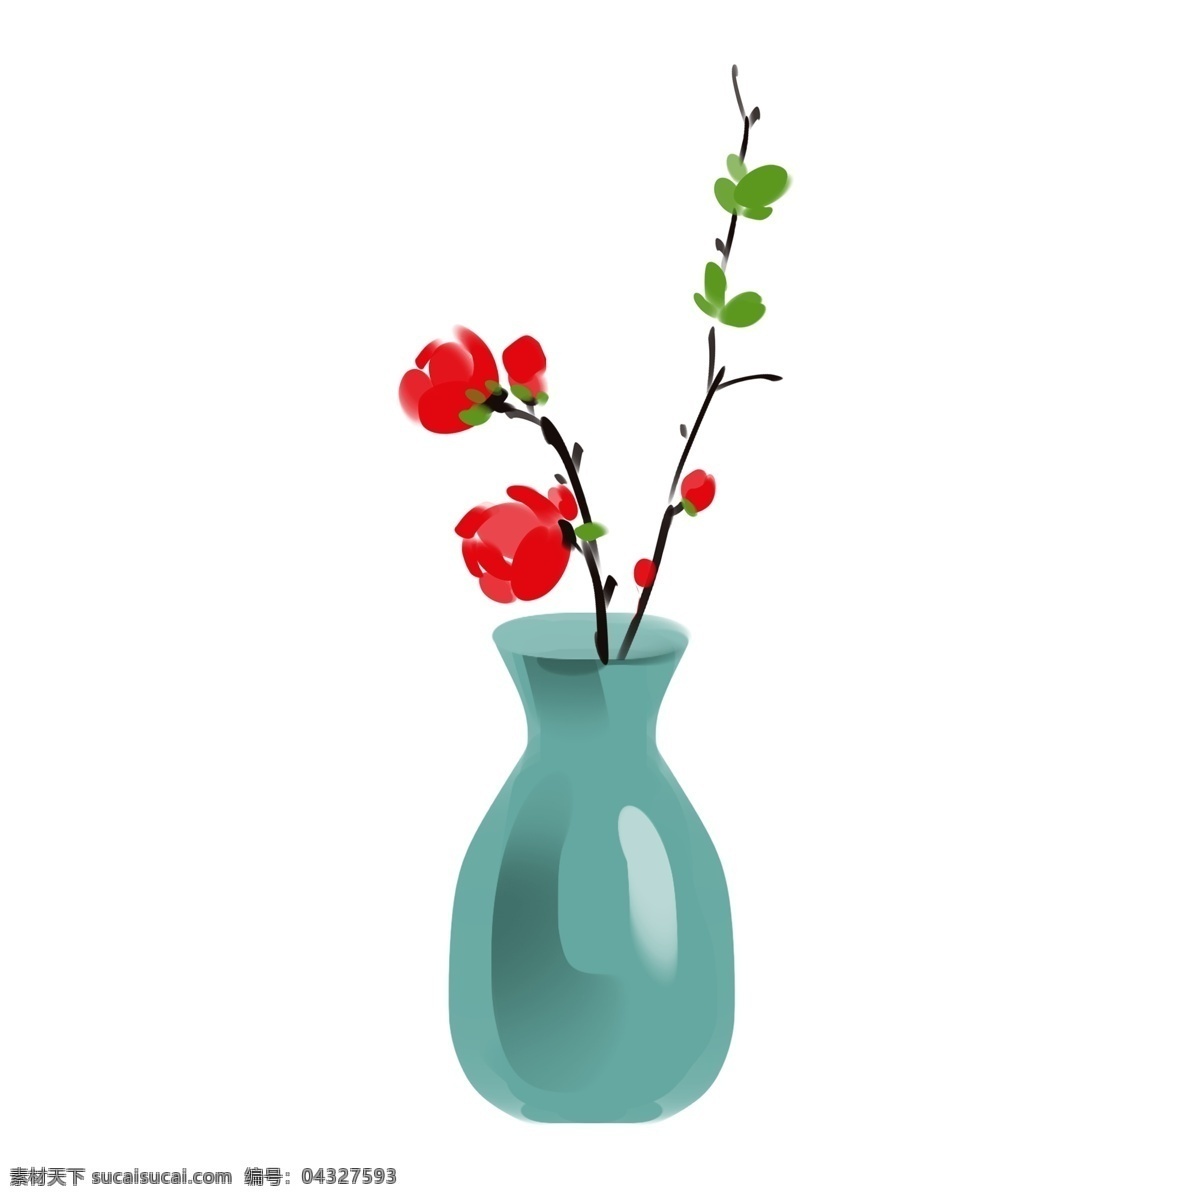 绿色 瓷瓶 插花 插画 红色花朵 花卉 植物 瓷器 陶瓷 绿色瓷瓶 手绘瓷瓶 瓷瓶插花插画 绿色的叶子